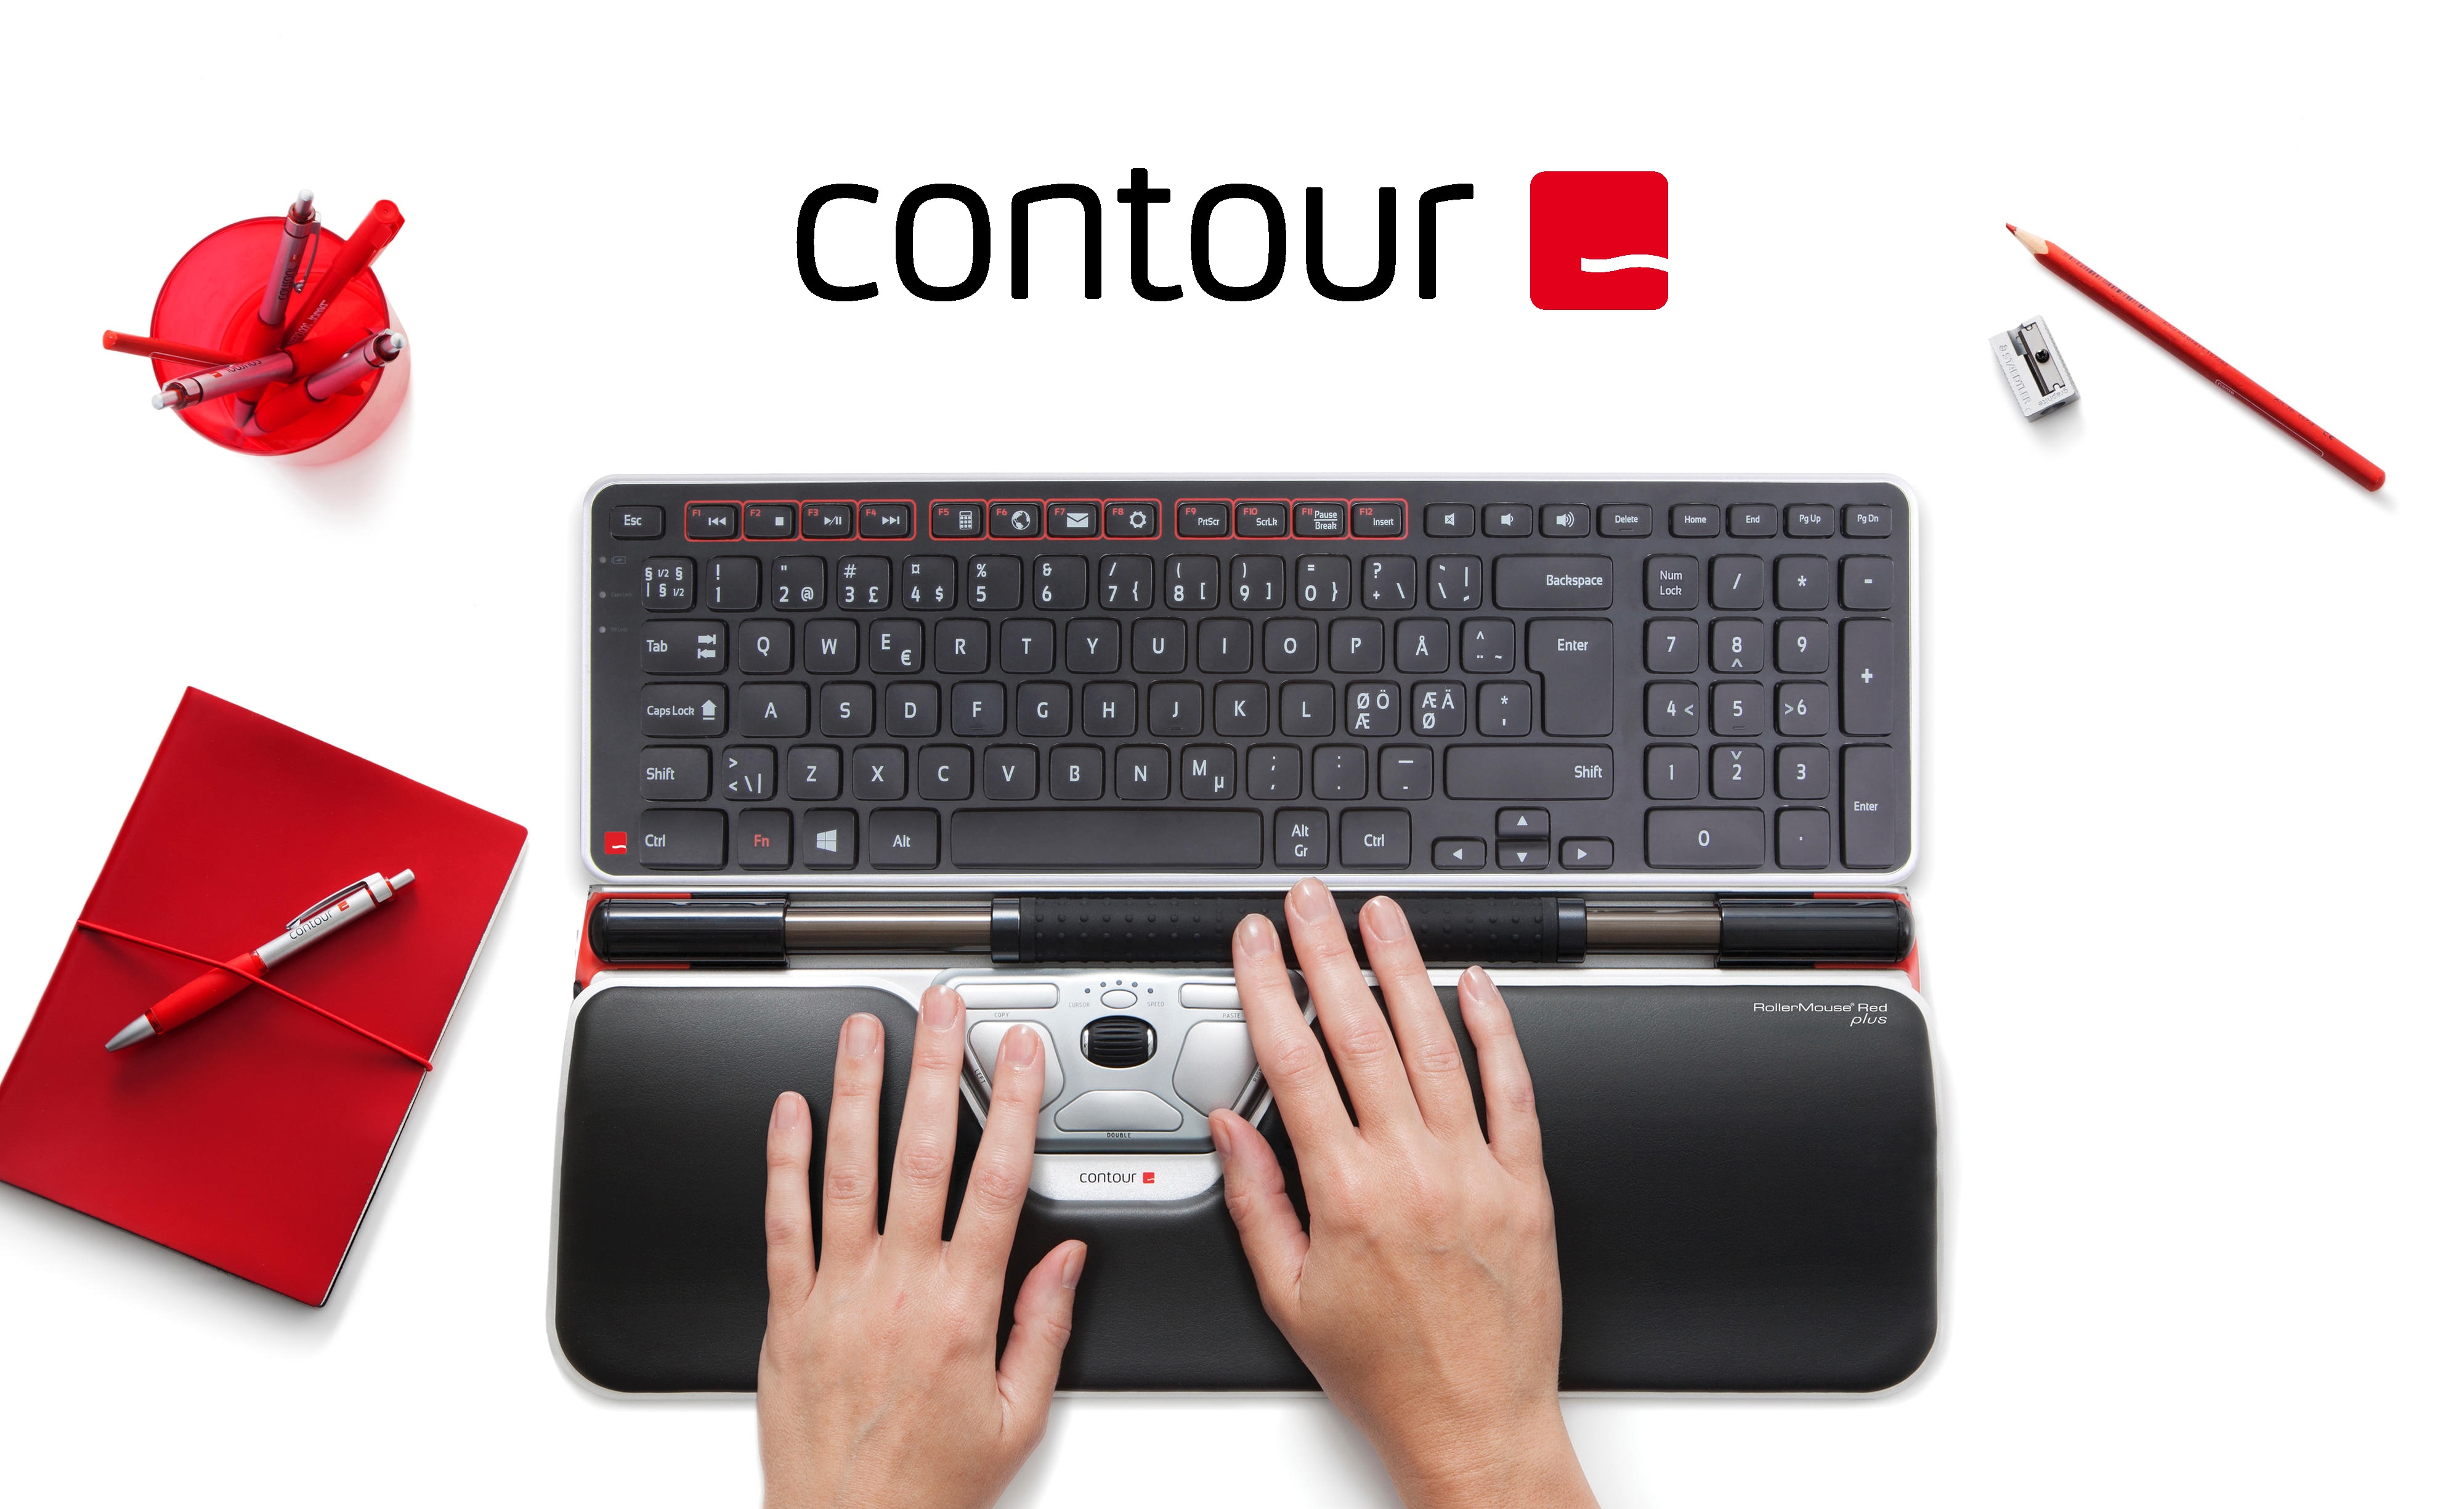 Contour tillbehör på ett vitt bord, intill en datorskärm och röd kontorsutrustning